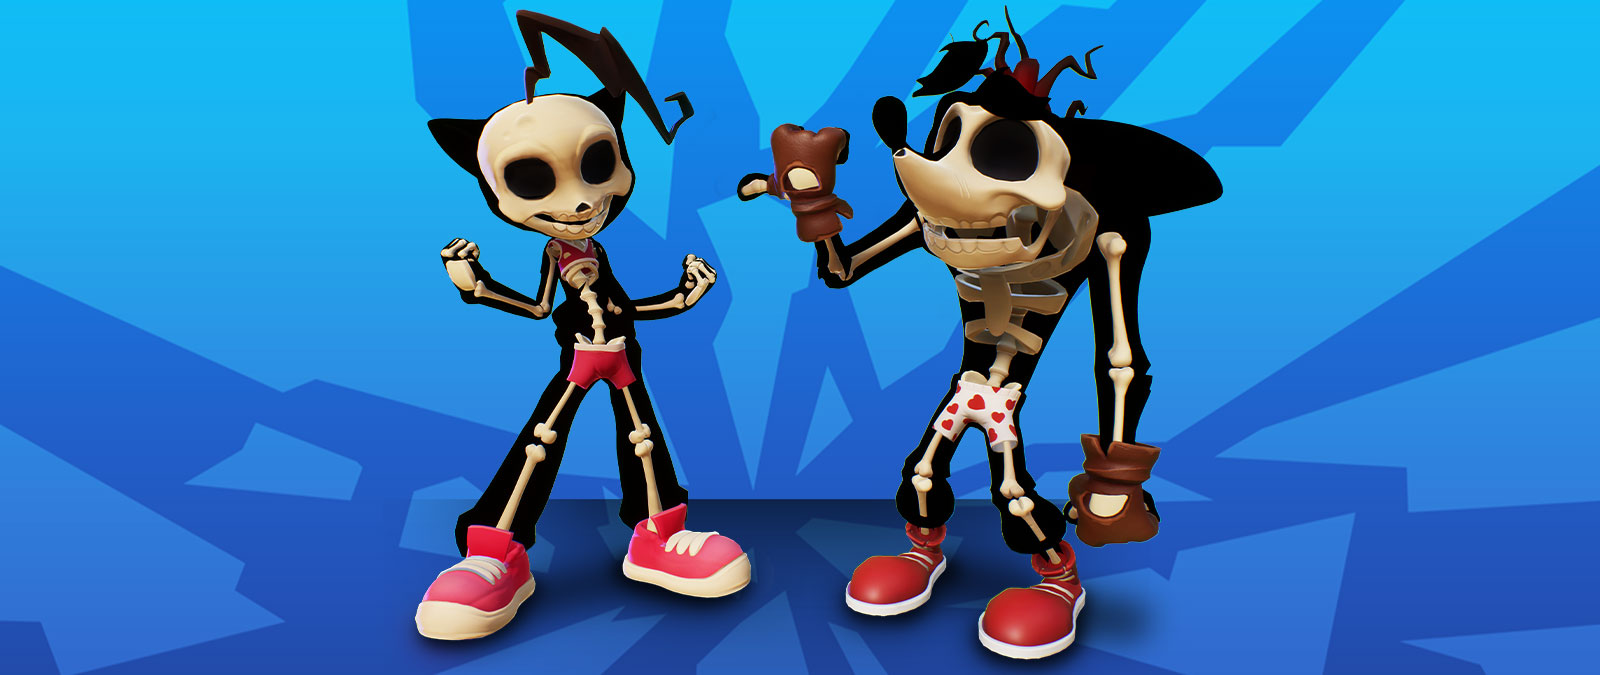 Скелеты Крэша и Коко в нижнем белье.